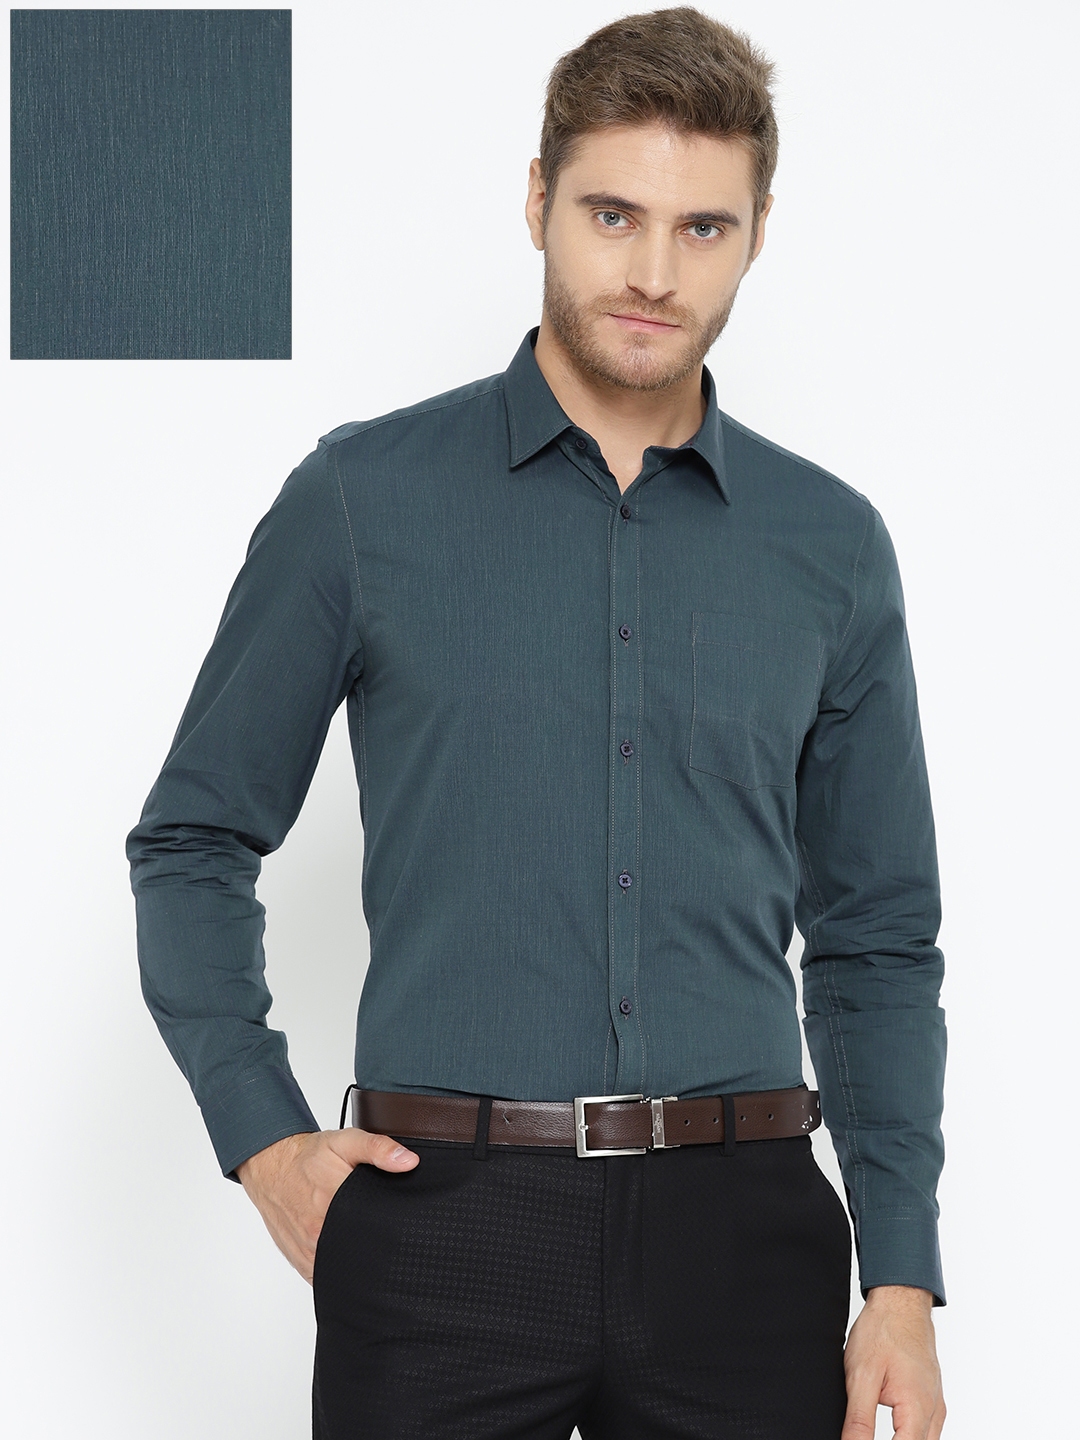 Buy Blackberrys Men Teal Green Slim Fit Solid Formal Shirt - Shirts for ...